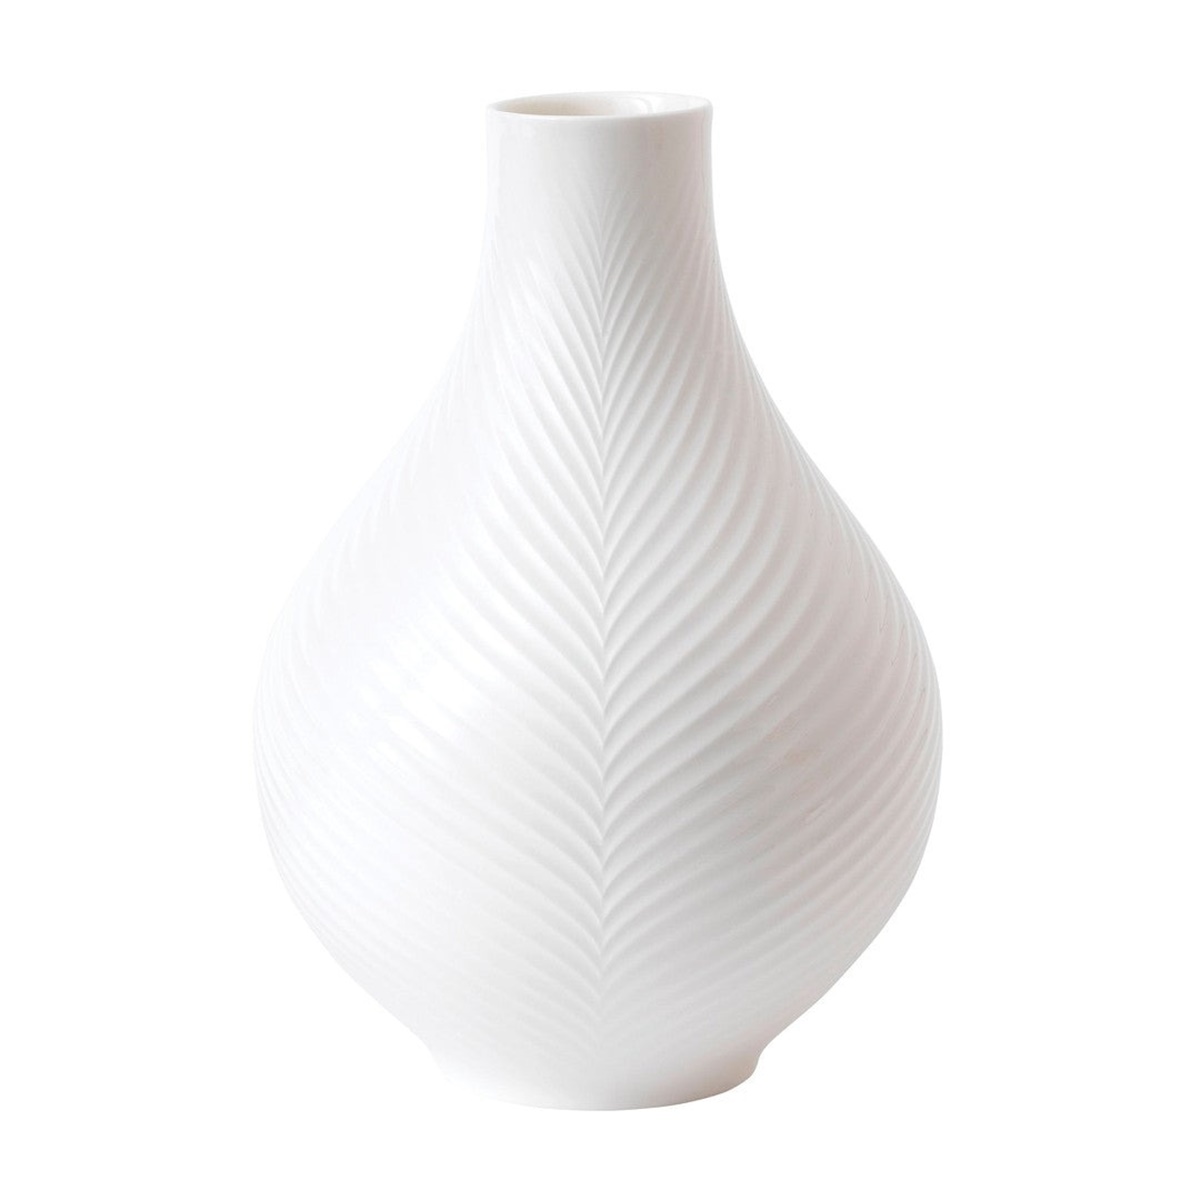 10 Superior Bulb Vase for 2023